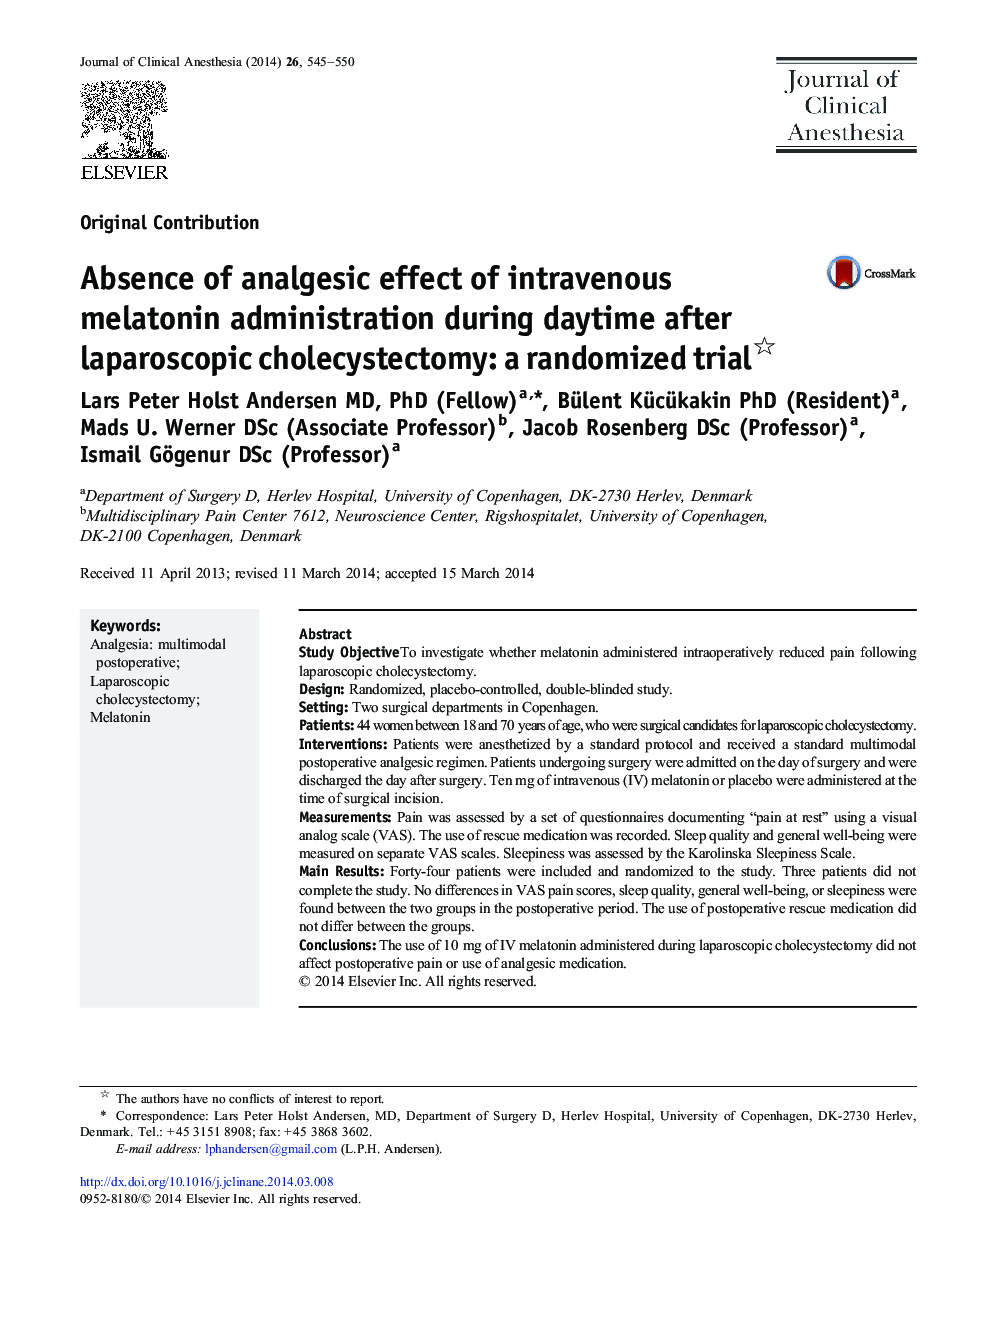 عدم وجود اثر ضد درد تزریق داخل وریدی ملاتونین در روز بعد از کولسیستکتومی لاپاروسکوپی: یک مطالعه تصادفی 